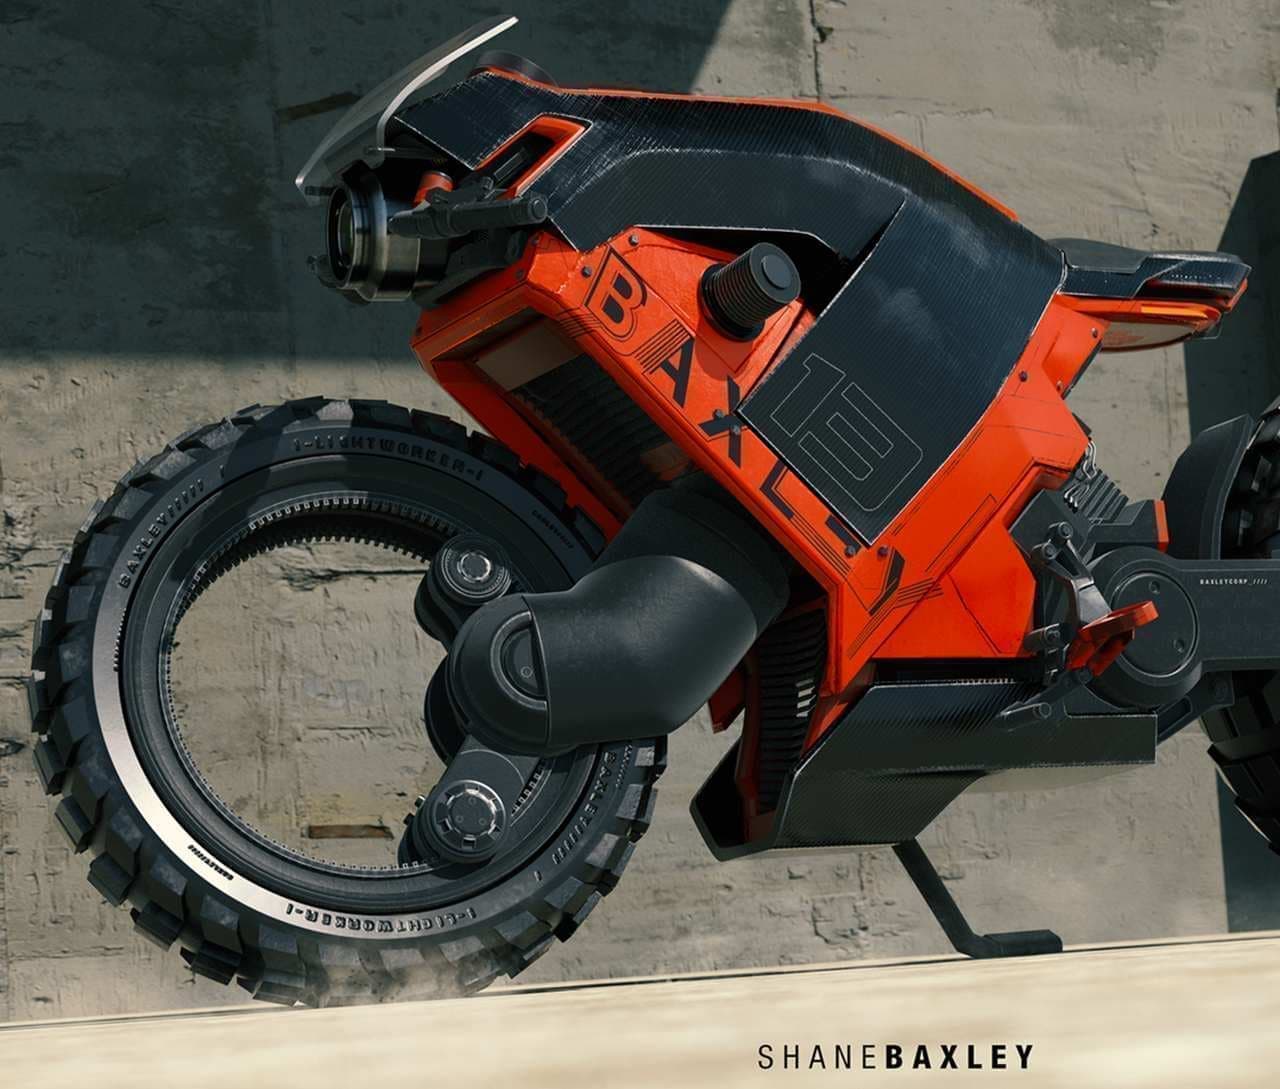 ハブレスバイクのアートコンセプト「Baxley Moto」